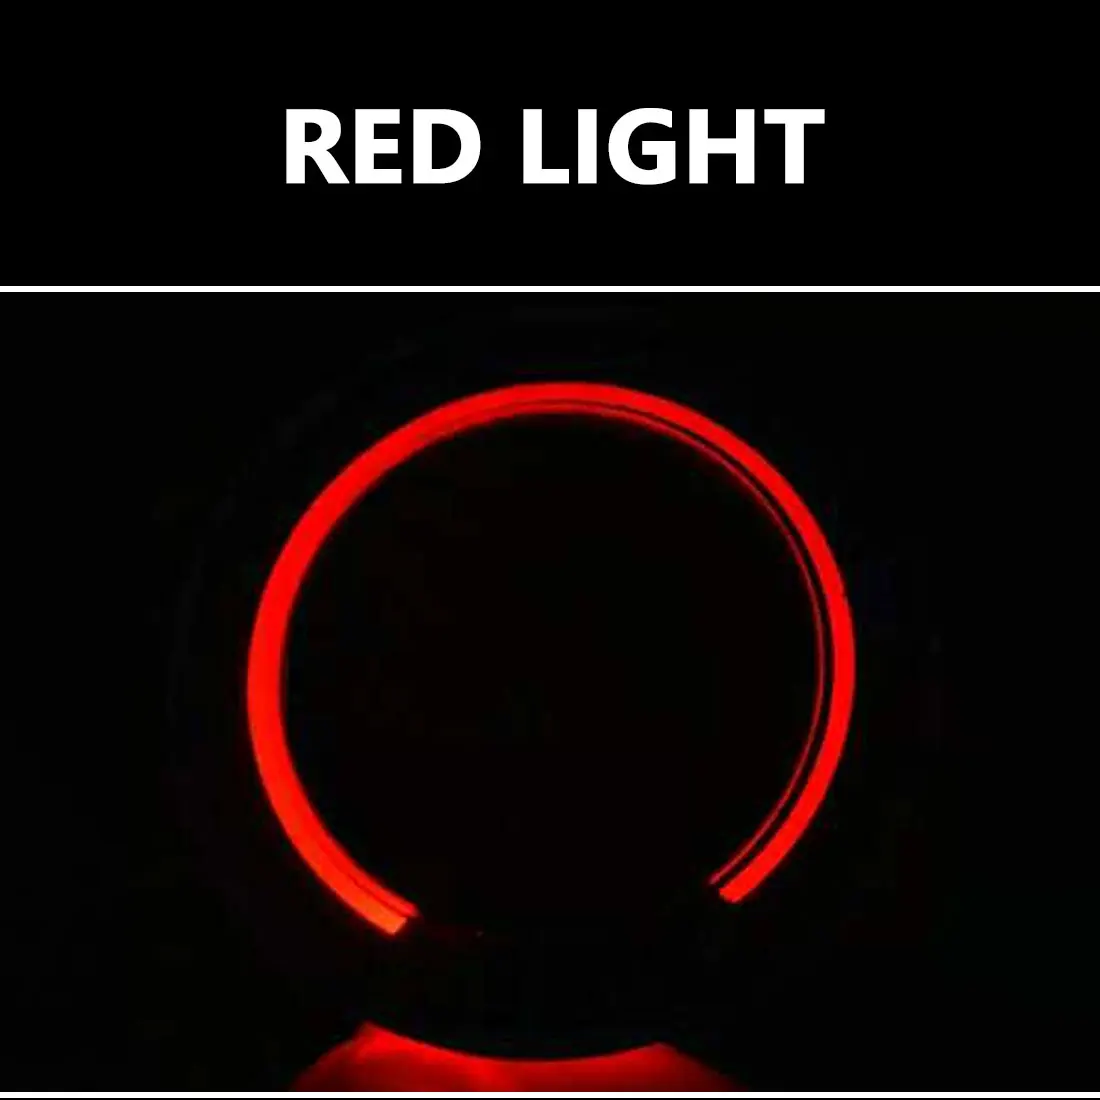 Dewtreetali автомобильный брелок для ключей со светодиодным освещением, декоративные наклейки для авто, аксессуары для Ford Focus 2 Focus 3 Kuga Mondeo - Название цвета: red light